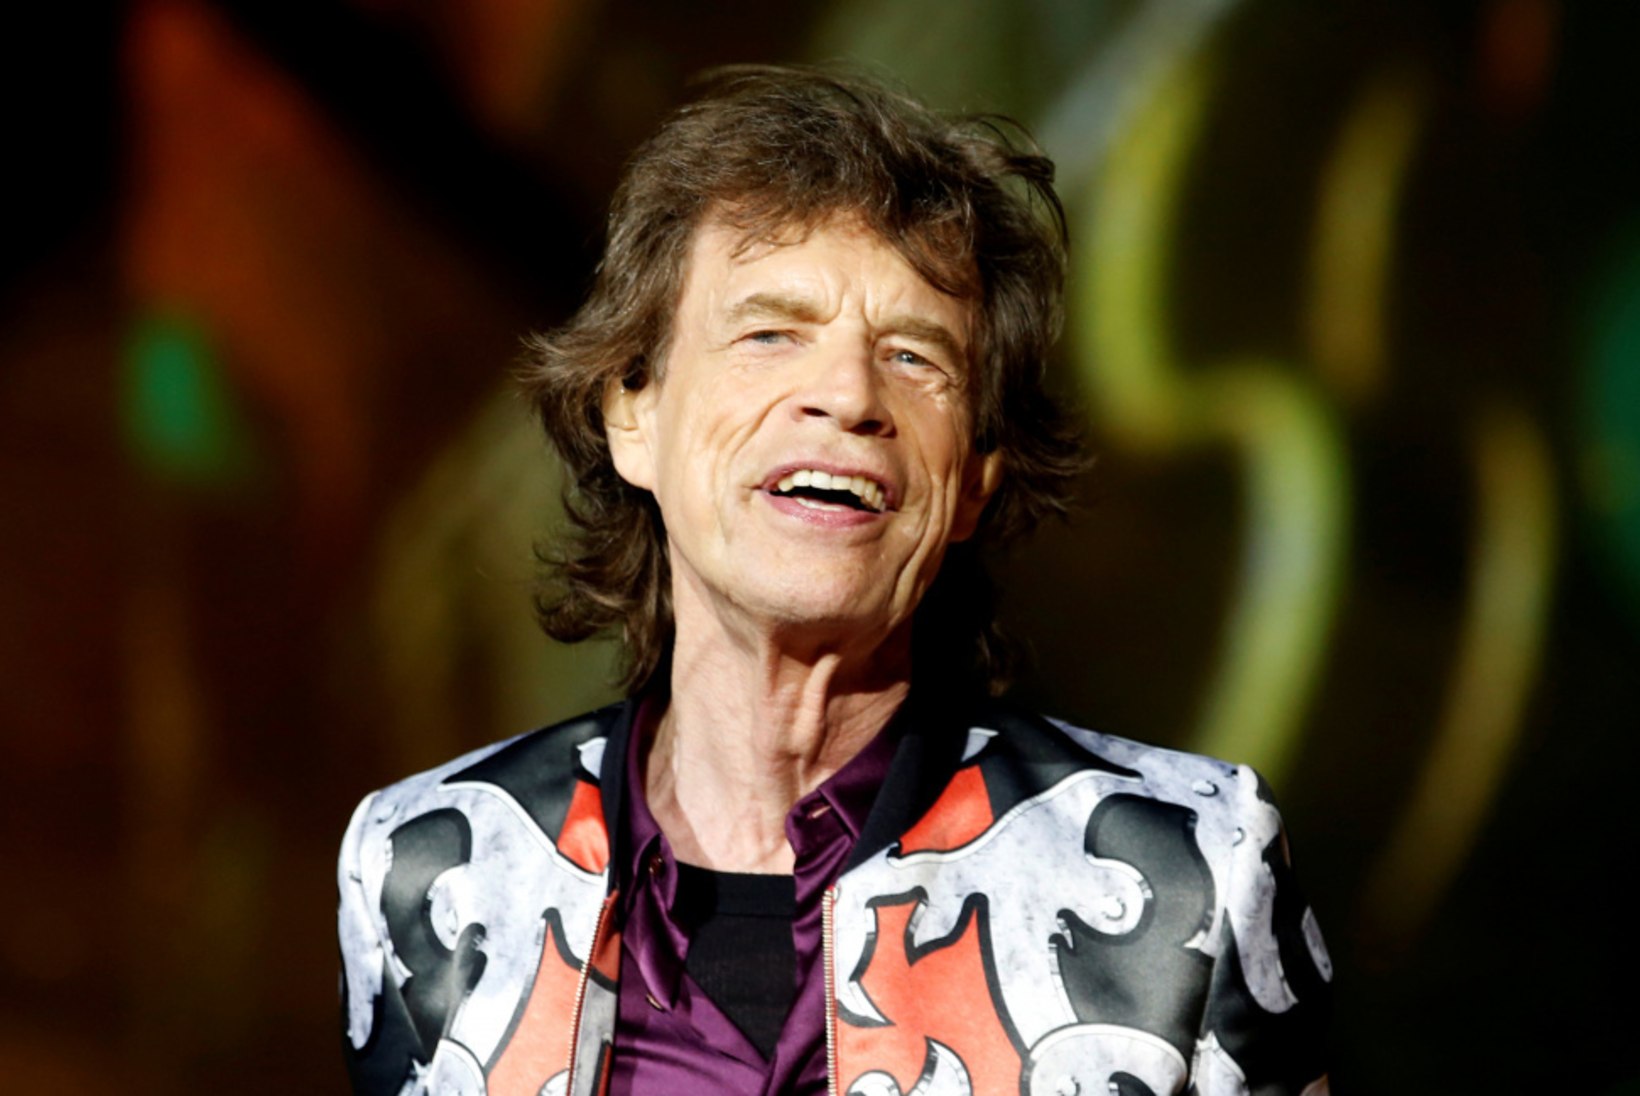 USA meedia: Mick Jaggerit ootab südamelõikus